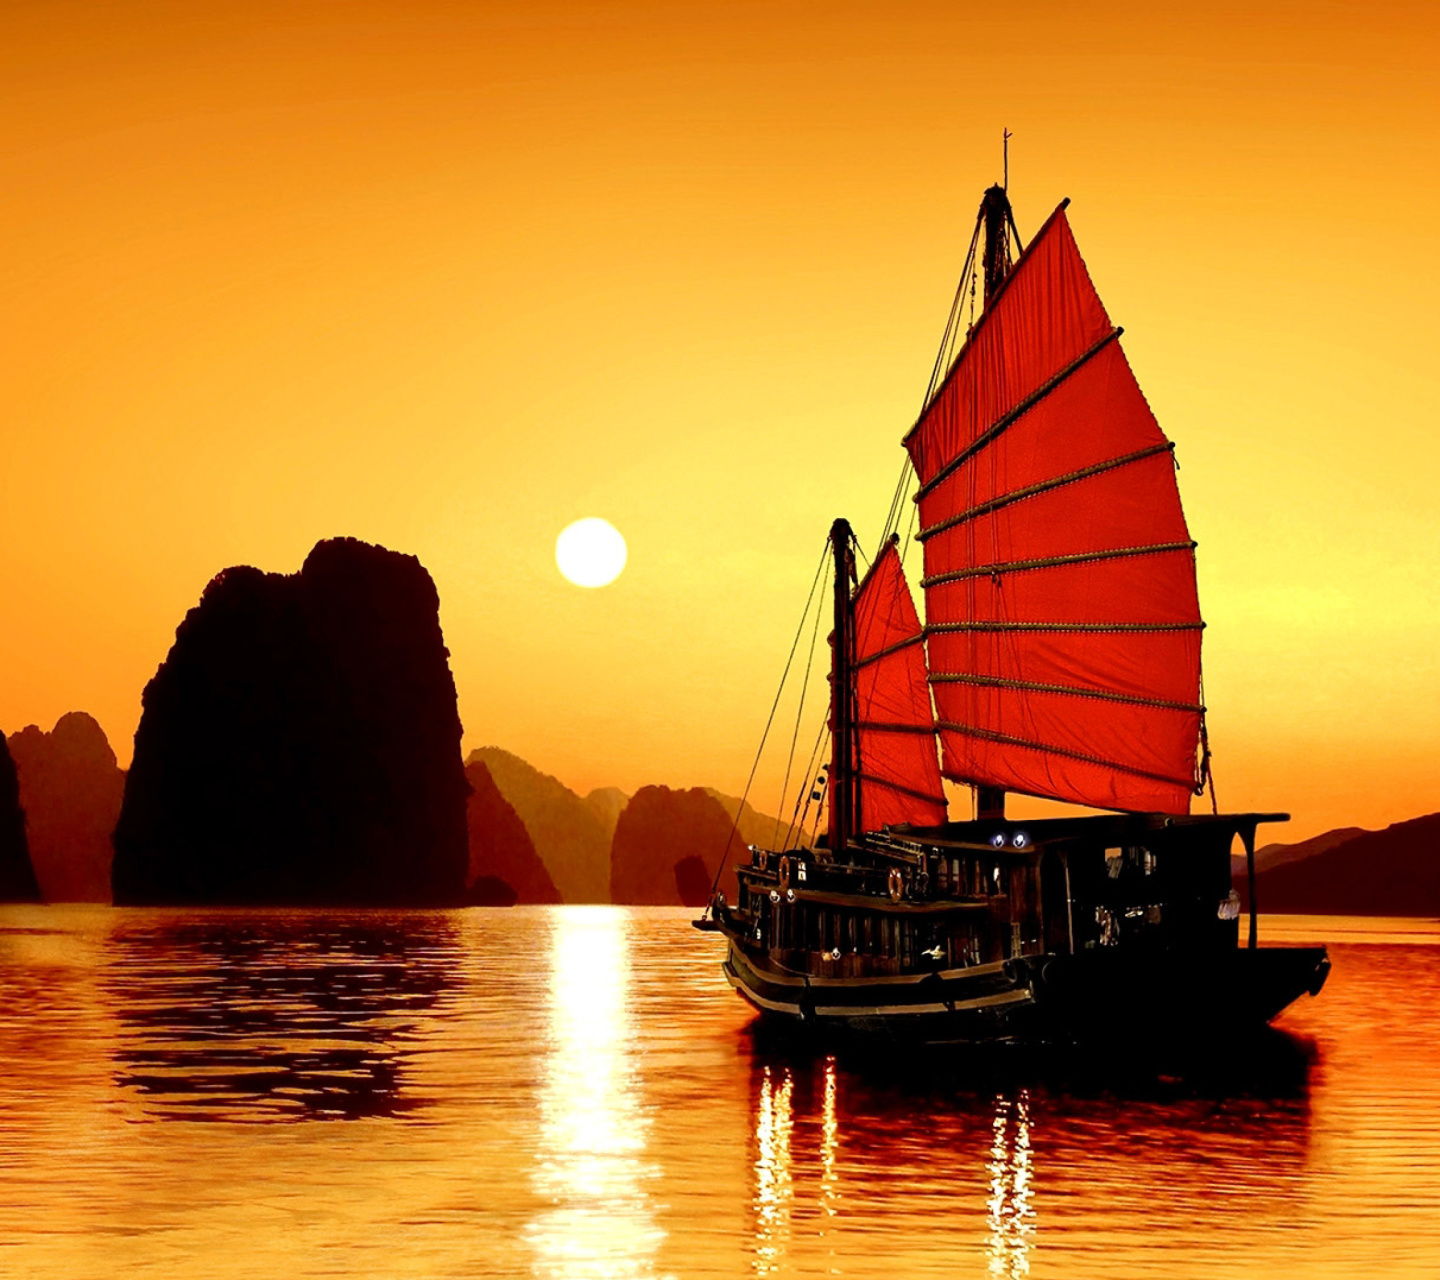 Обои Halong Bay, Vietnama in Sunset 1440x1280